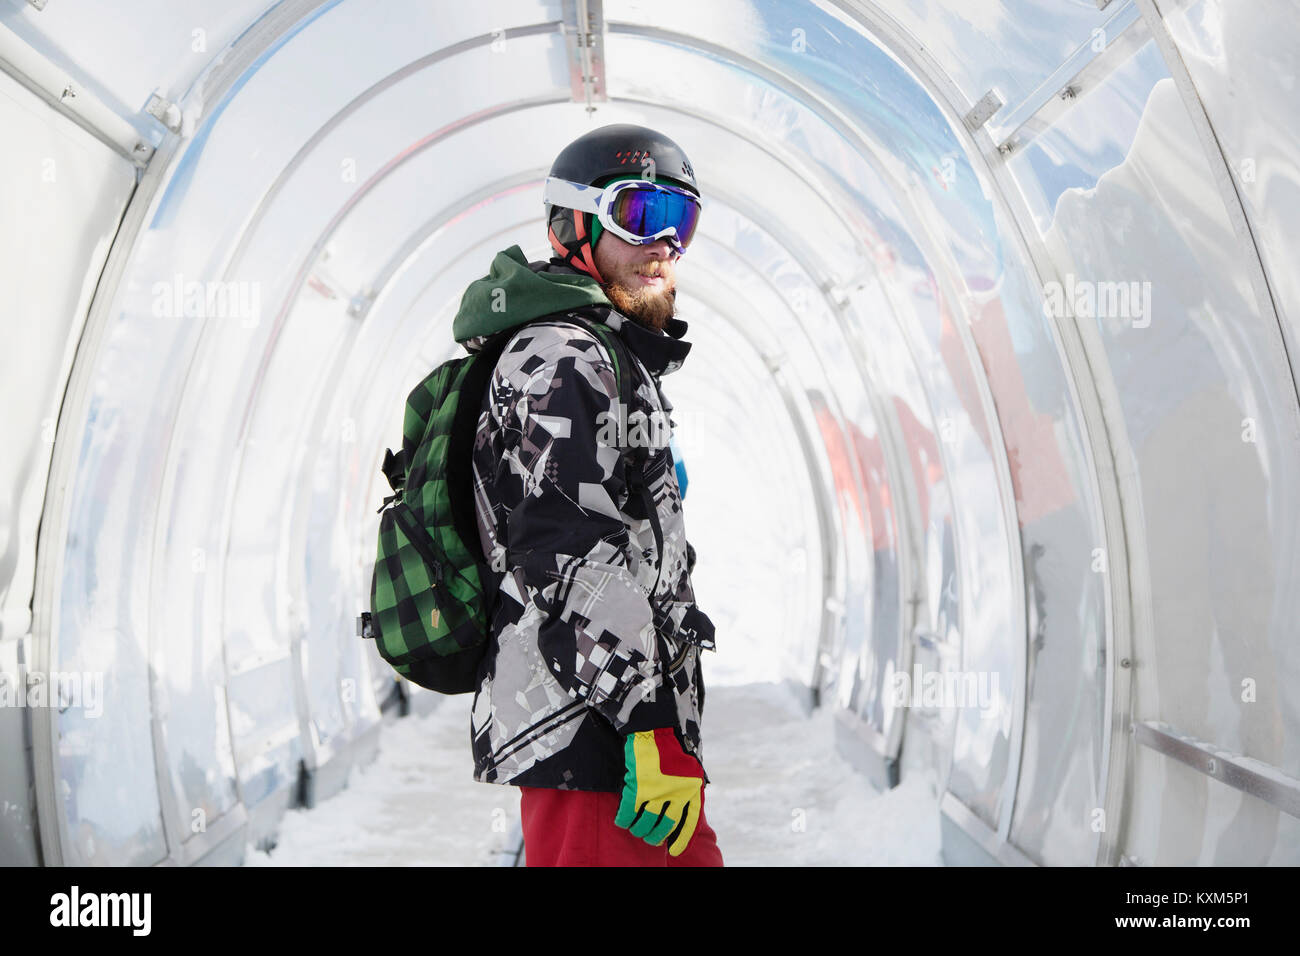 Portrait of snowboarder in ski run tunnel Stock Photo